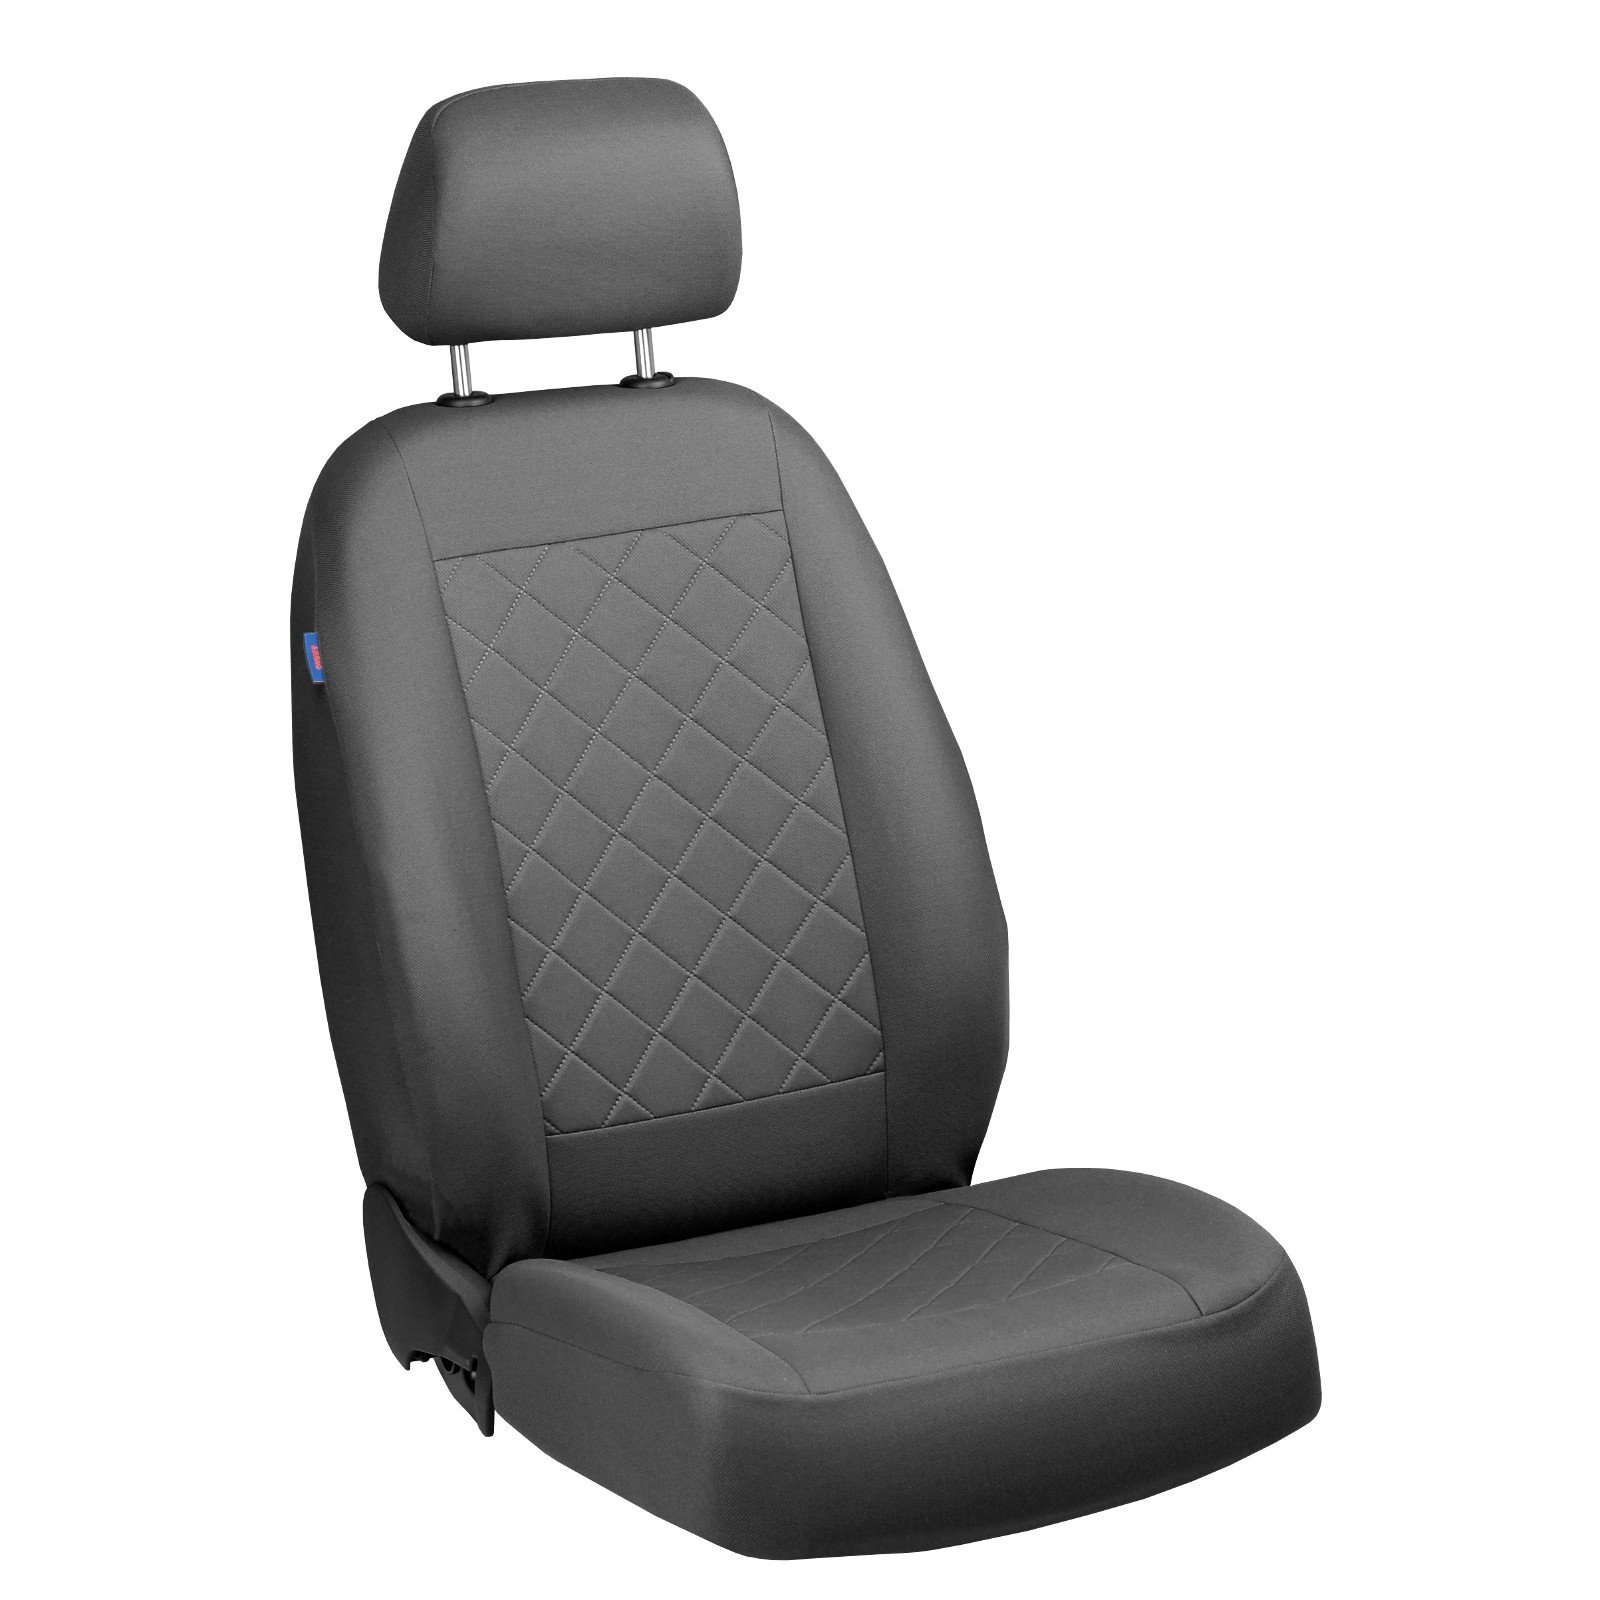 Zakschneider Jumper Fahrer Sitzbezug - Farbe Premium Grau von Zakschneider